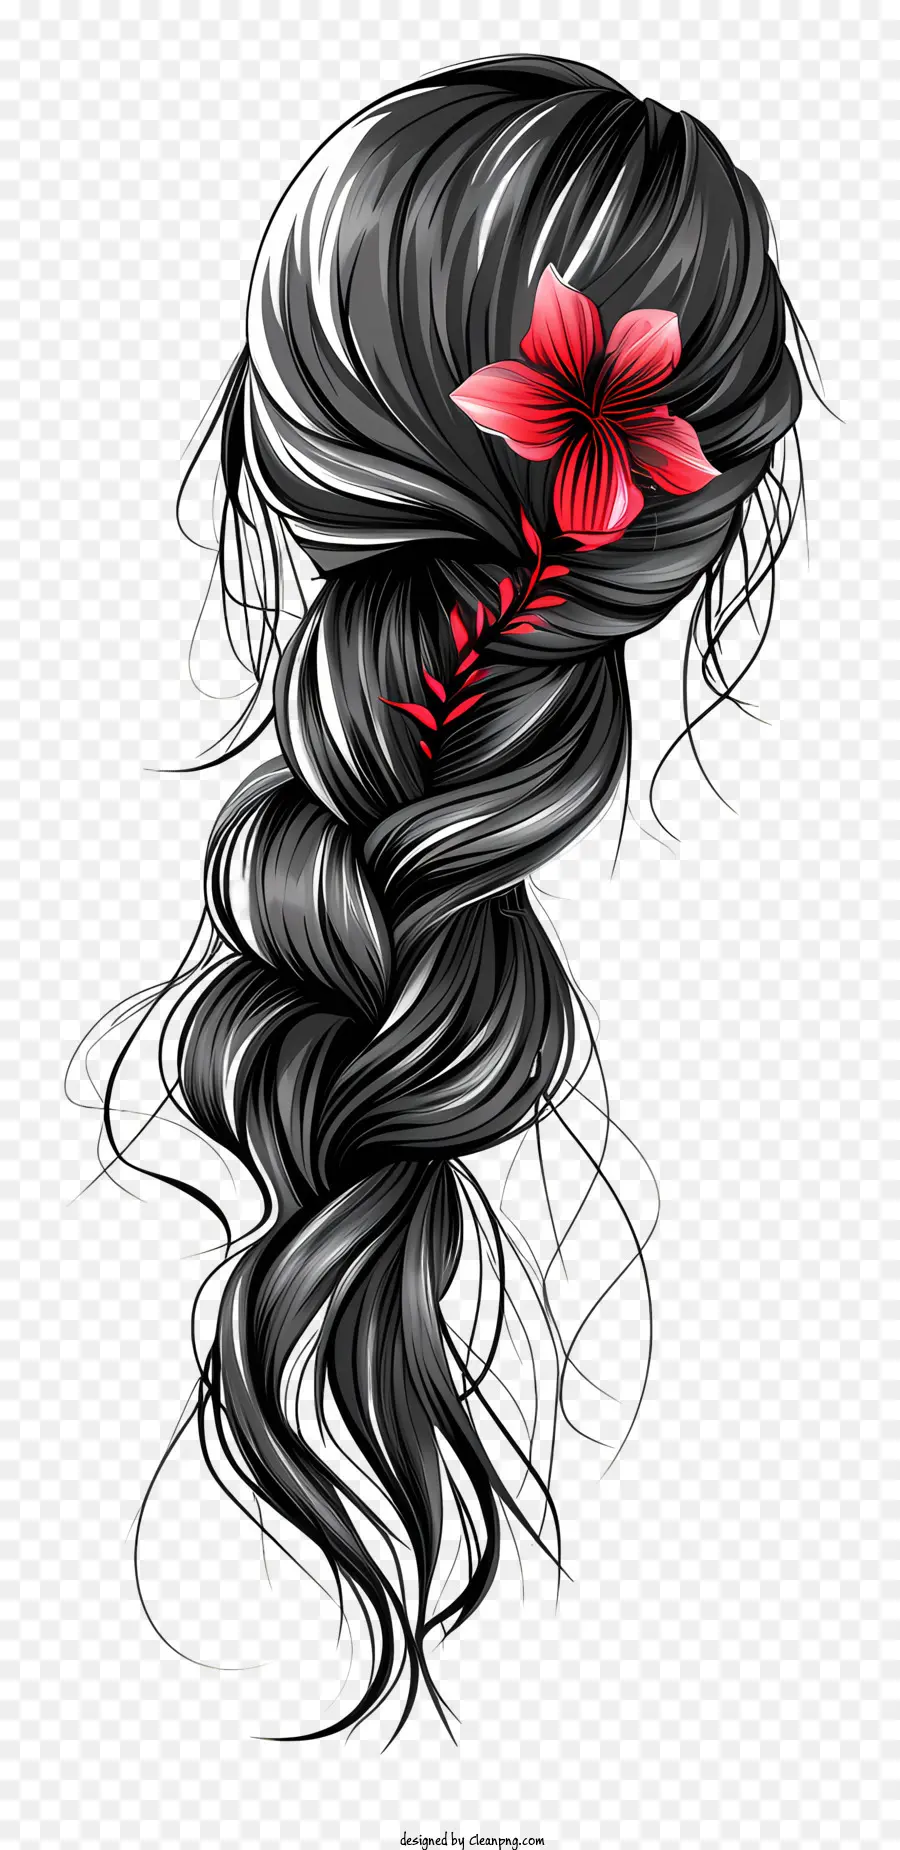 geflochtene Haar Perückenwellenhaar geschlossene Augen skurriler Stil - Wunderliche Schwarz -Weiß -Zeichnung der Frau